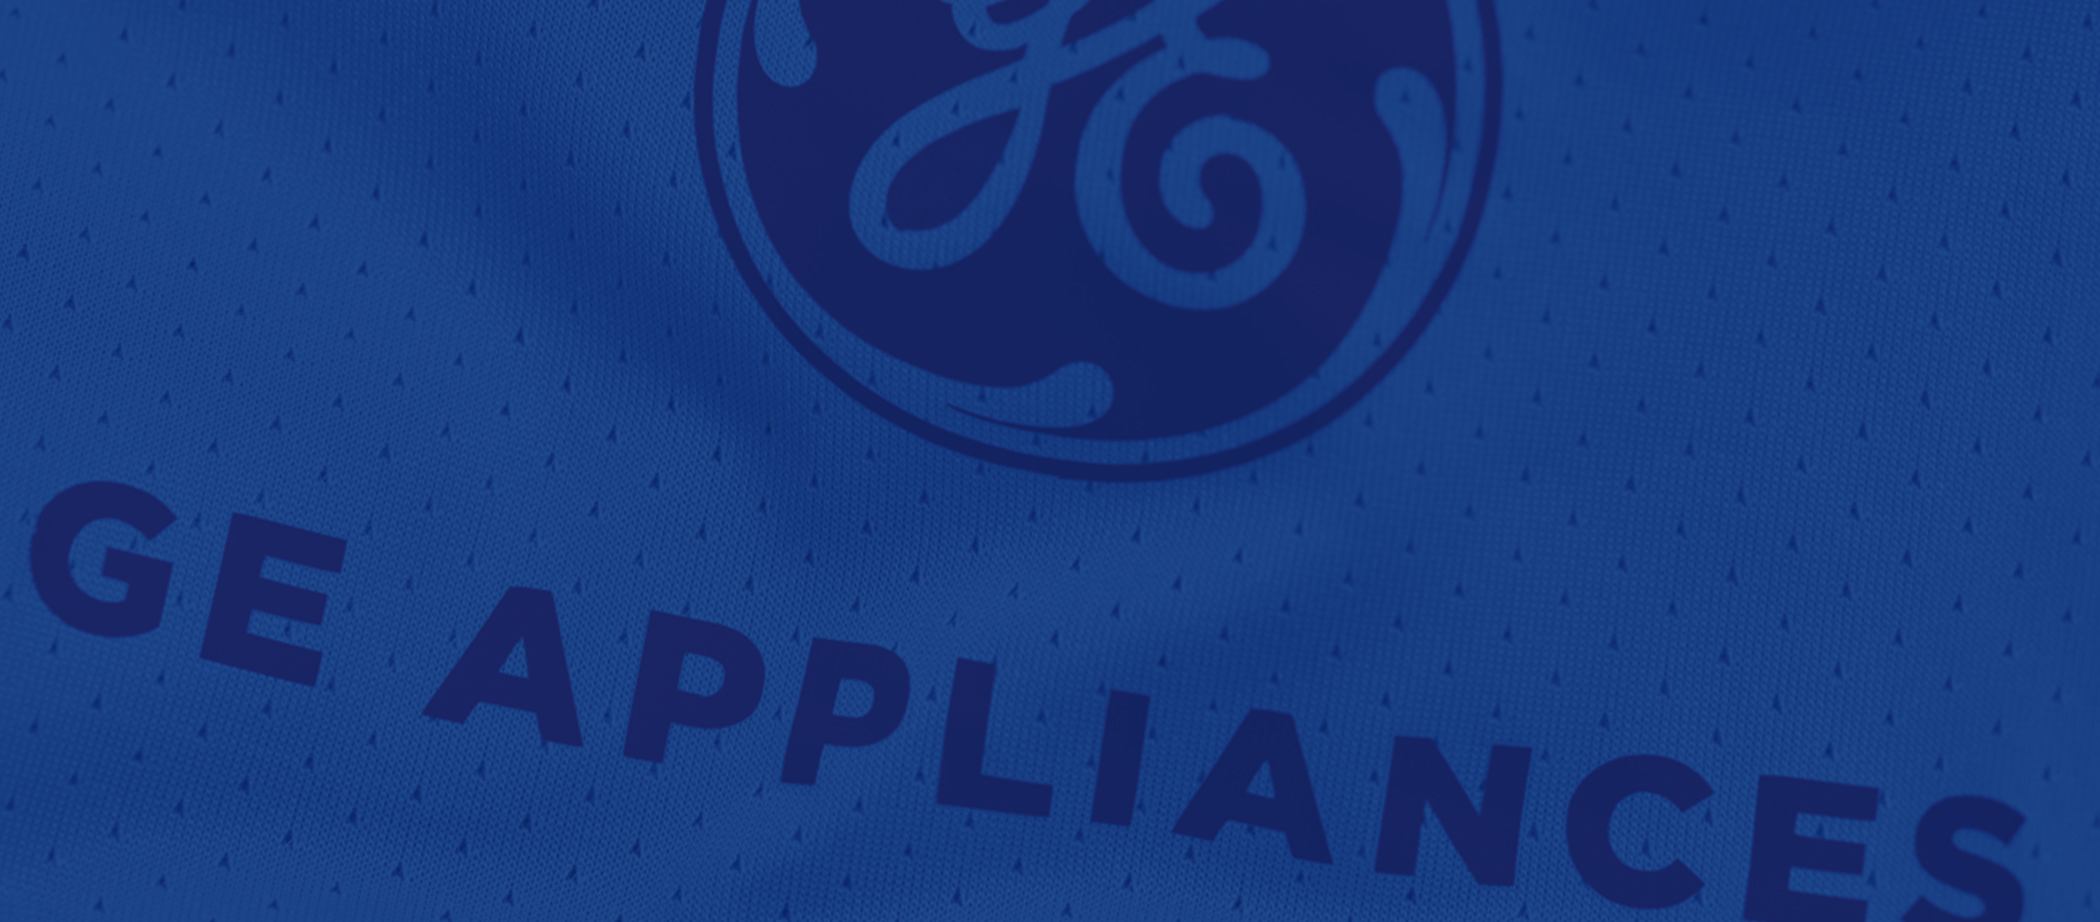 GE Appliances patch on new TFC Unity Kit jerseys